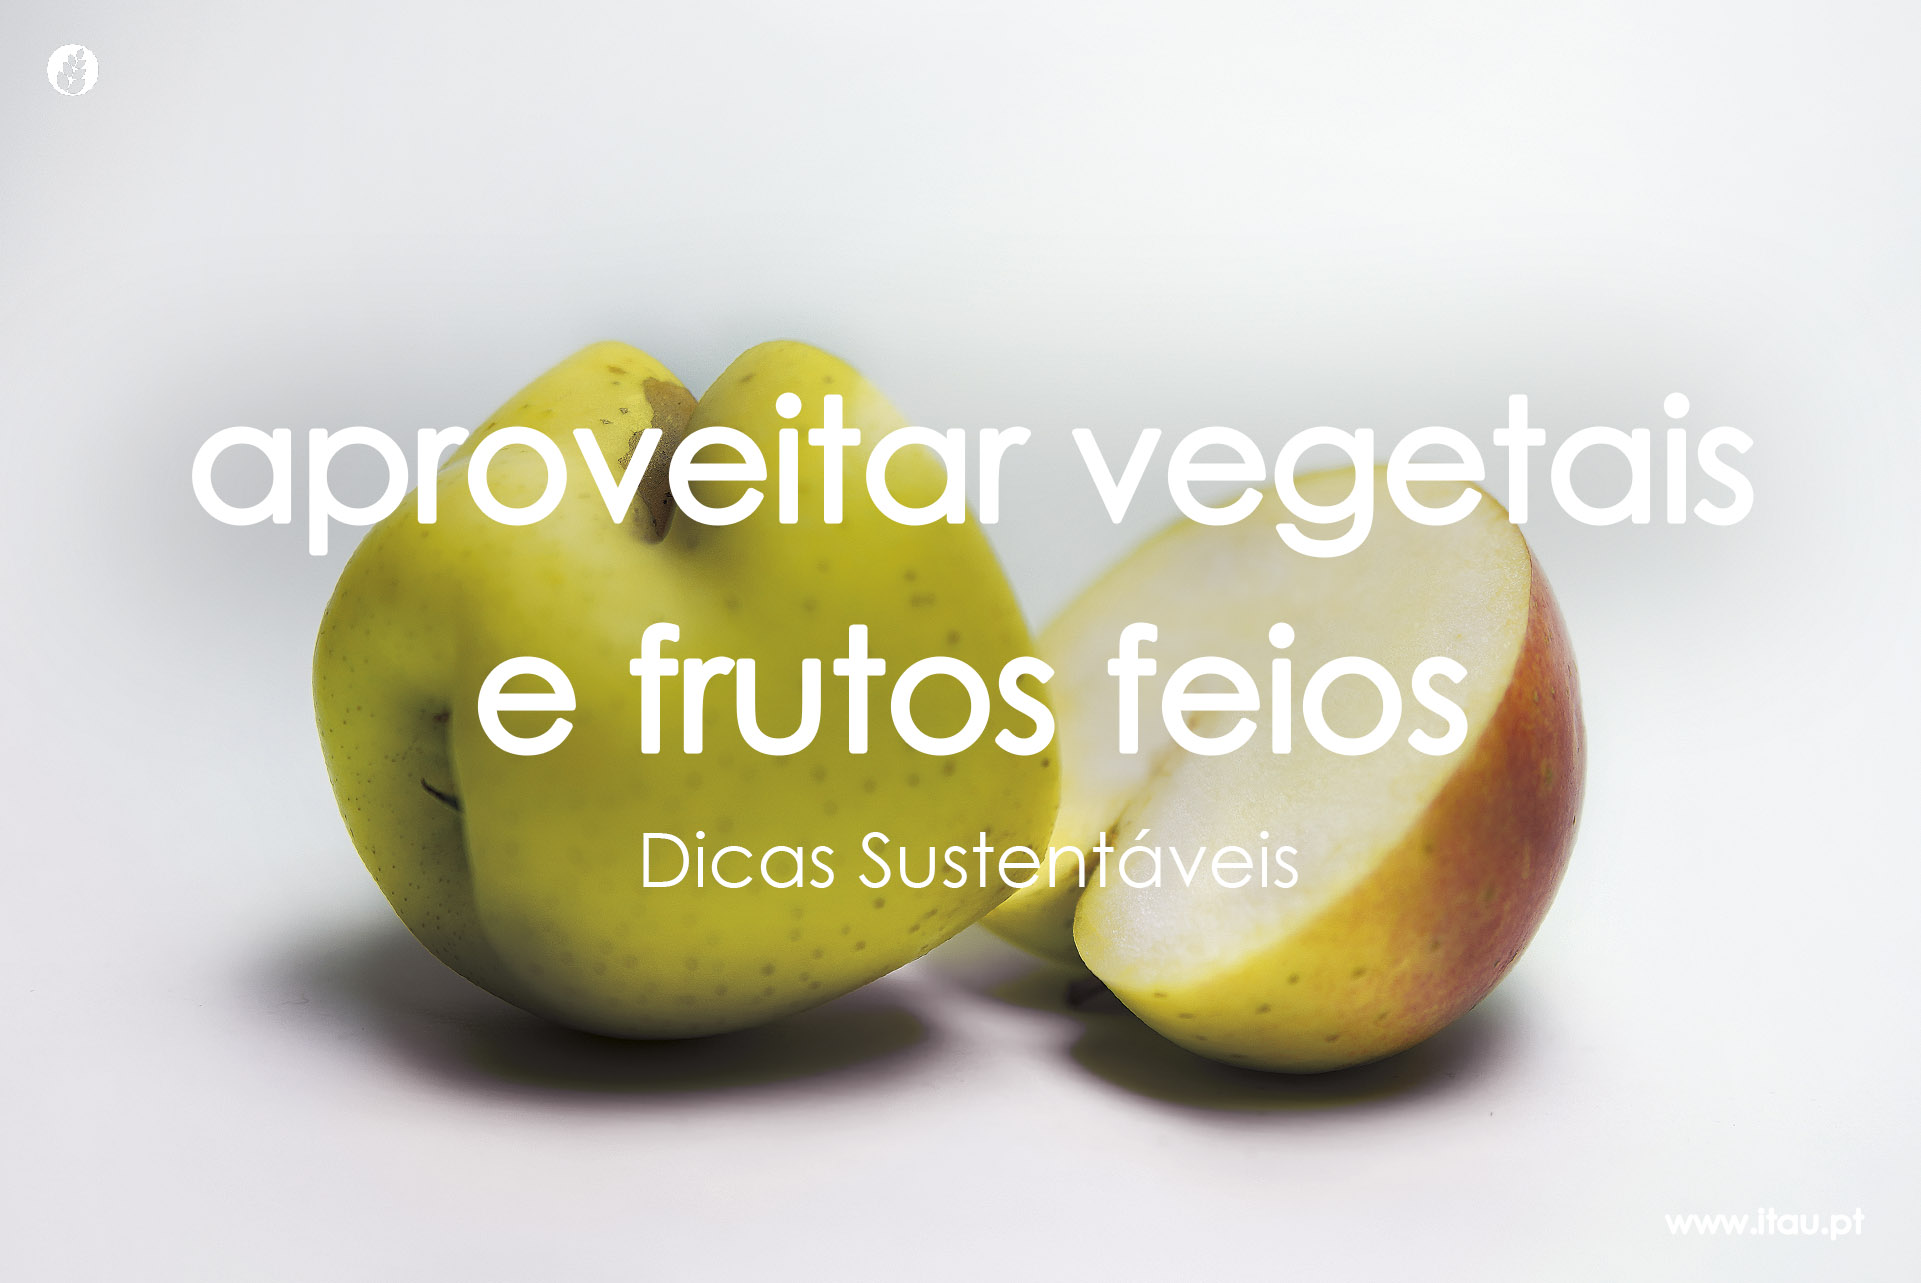 Aproveitar vegetais e frutos “feios”